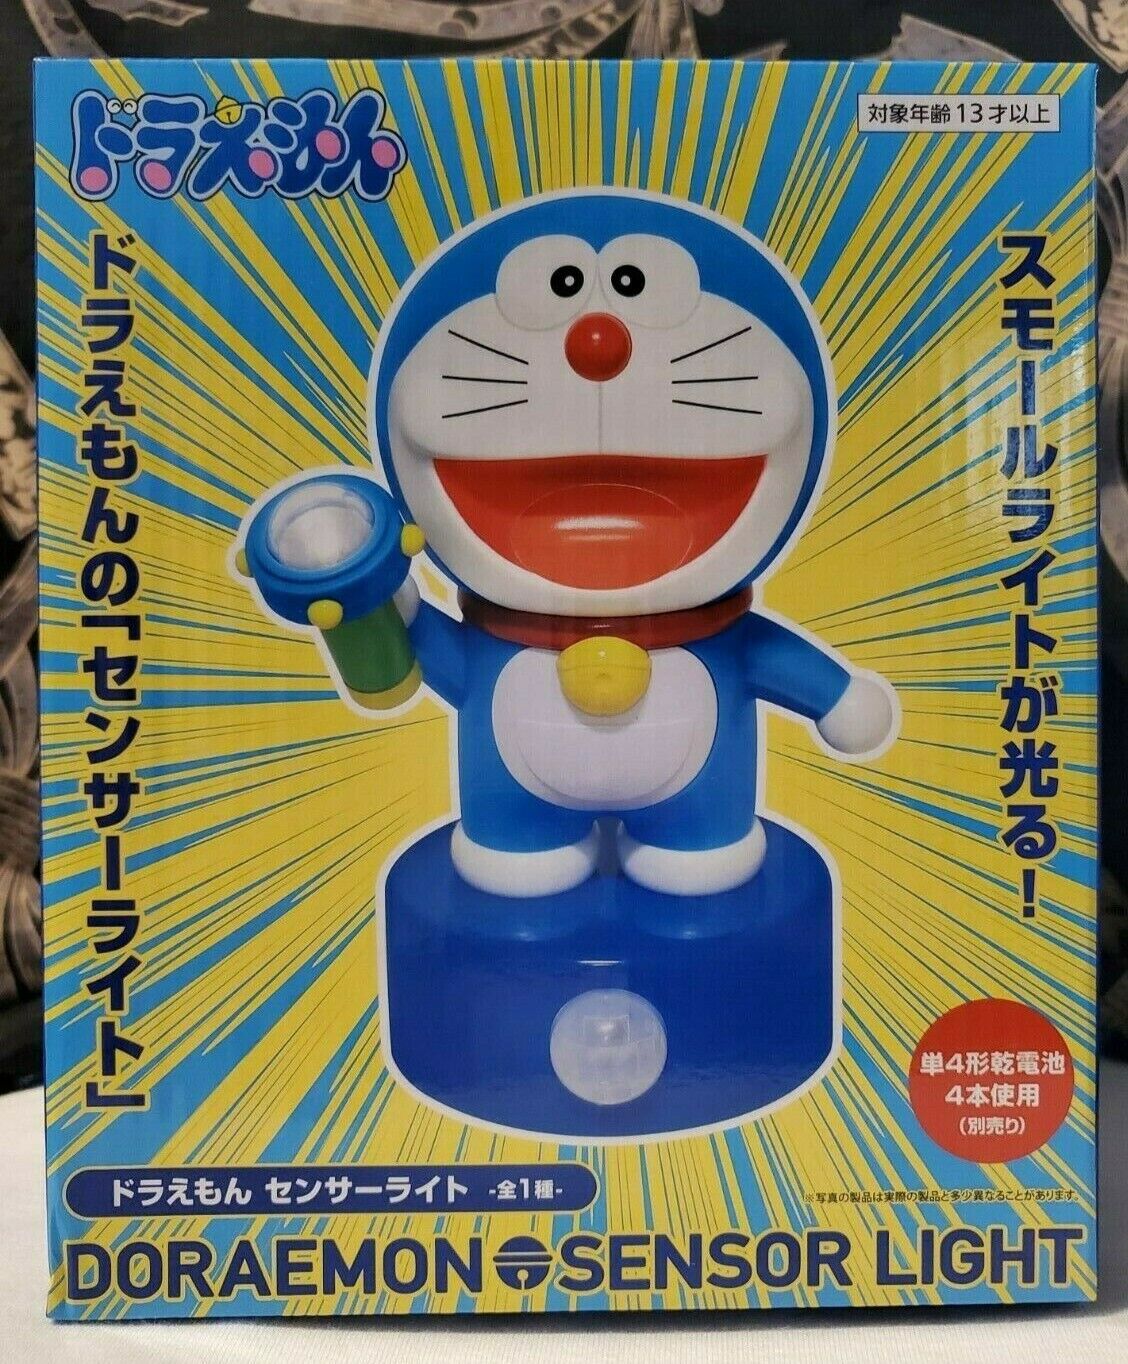 Doraemon sensor light Figure Toy Doll 15cm [Japan Import]